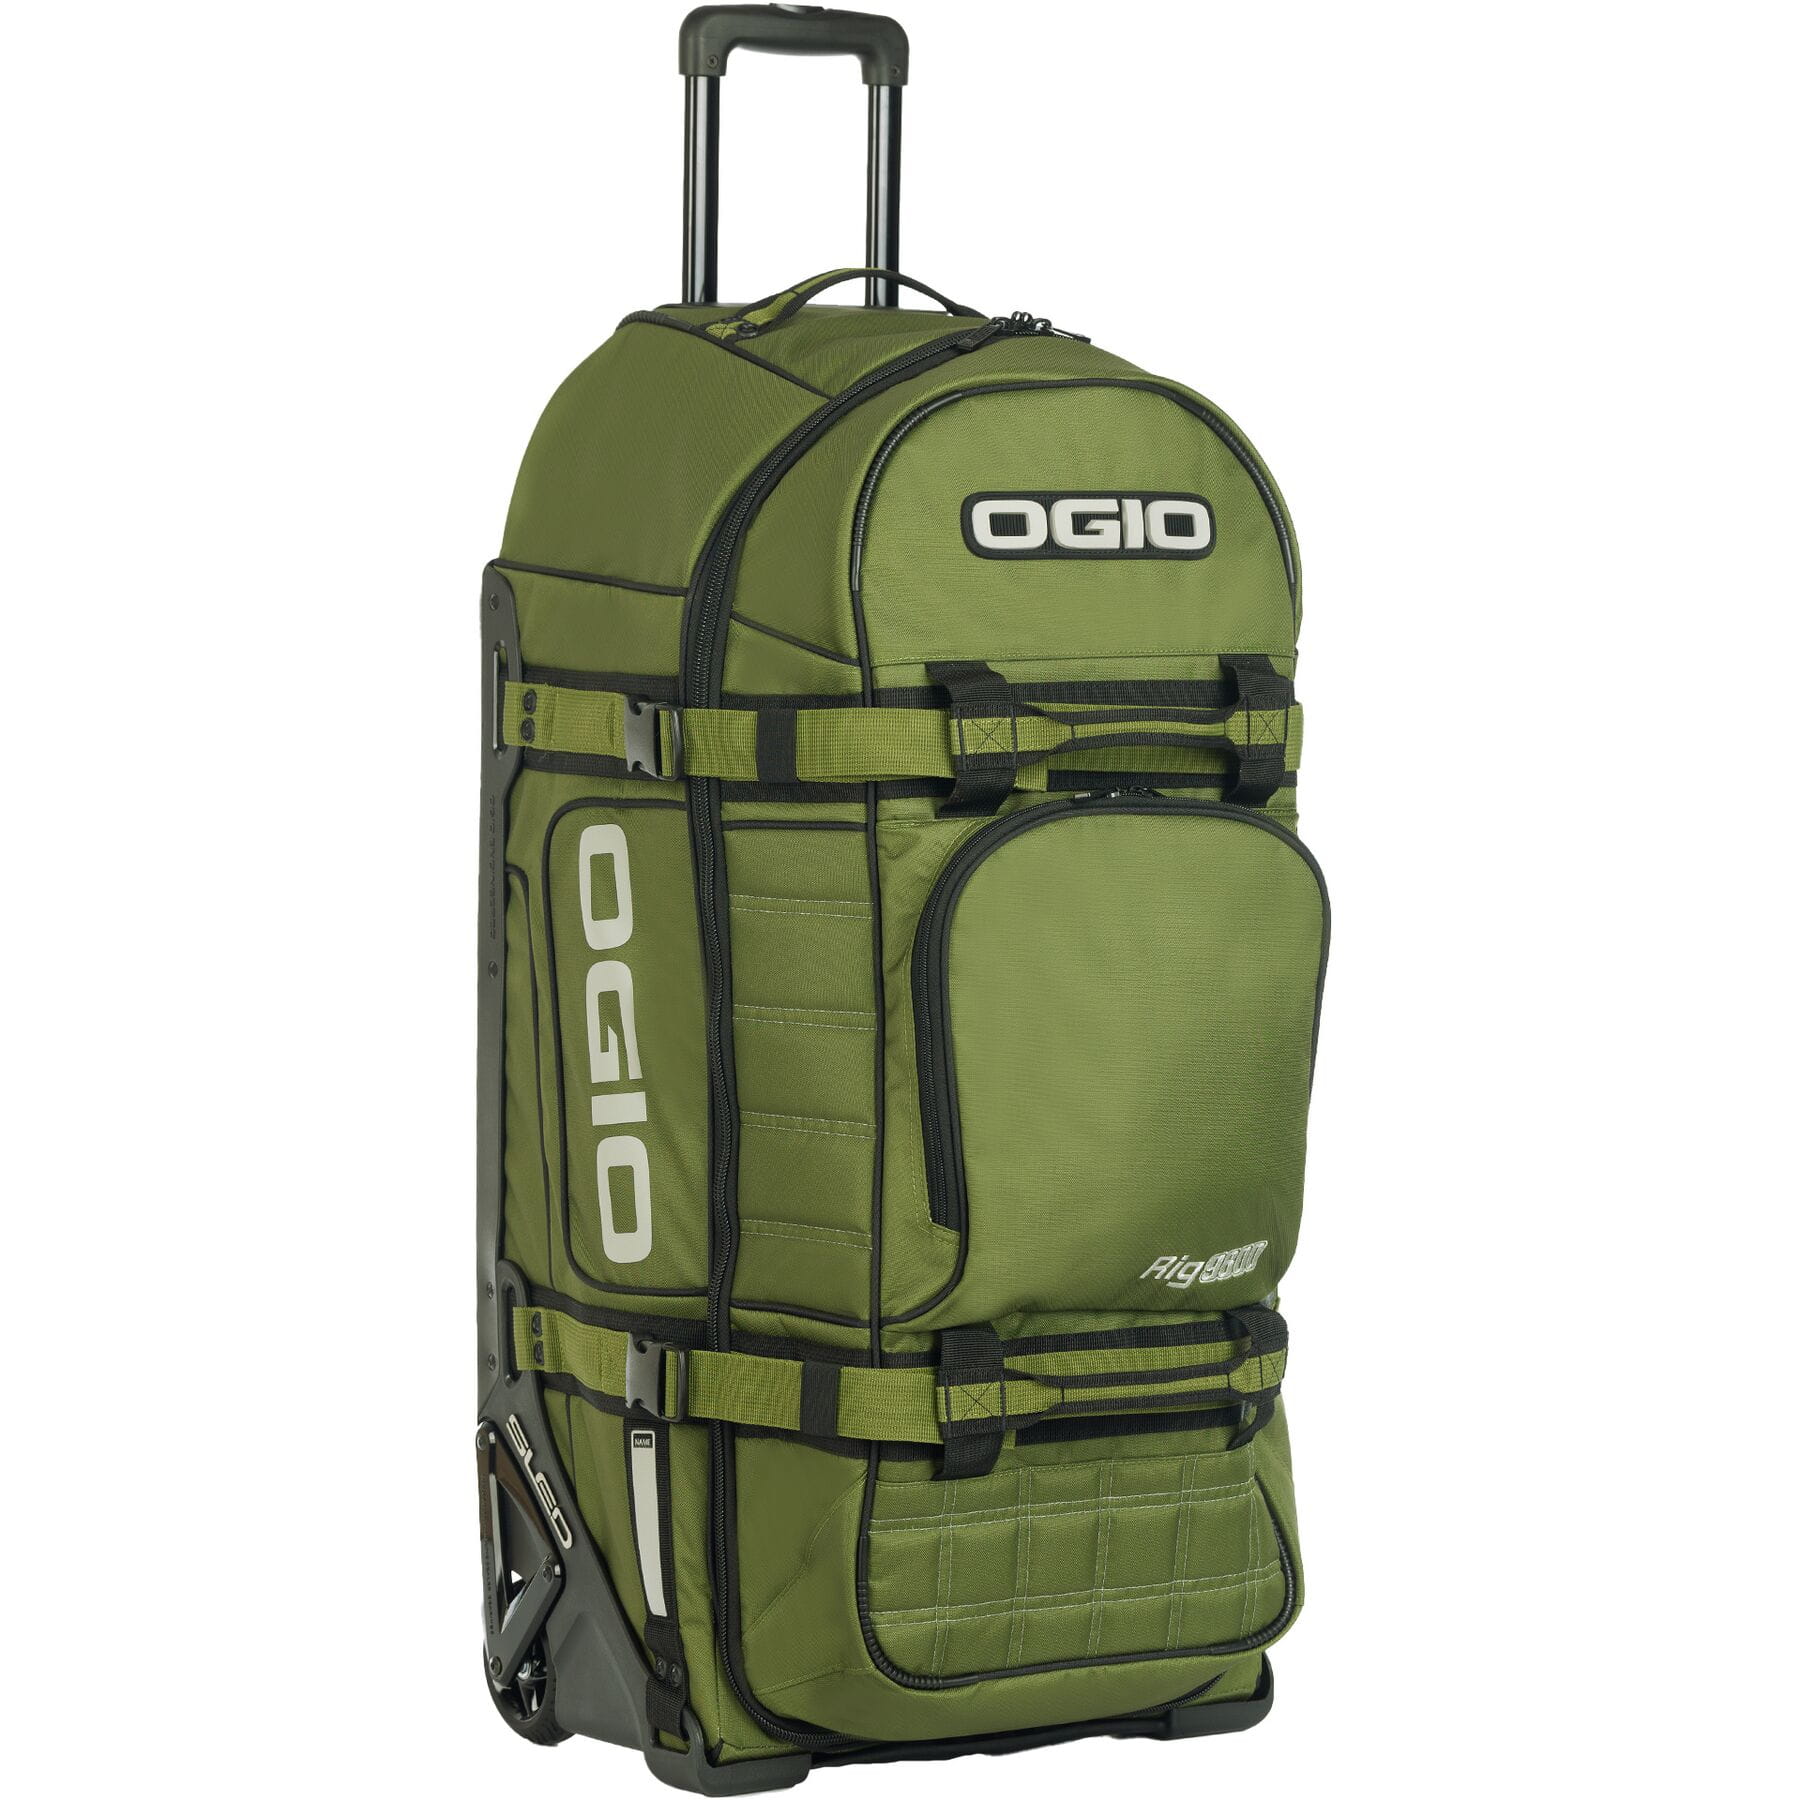 Ogio Rig 9800 Gear Bag Green